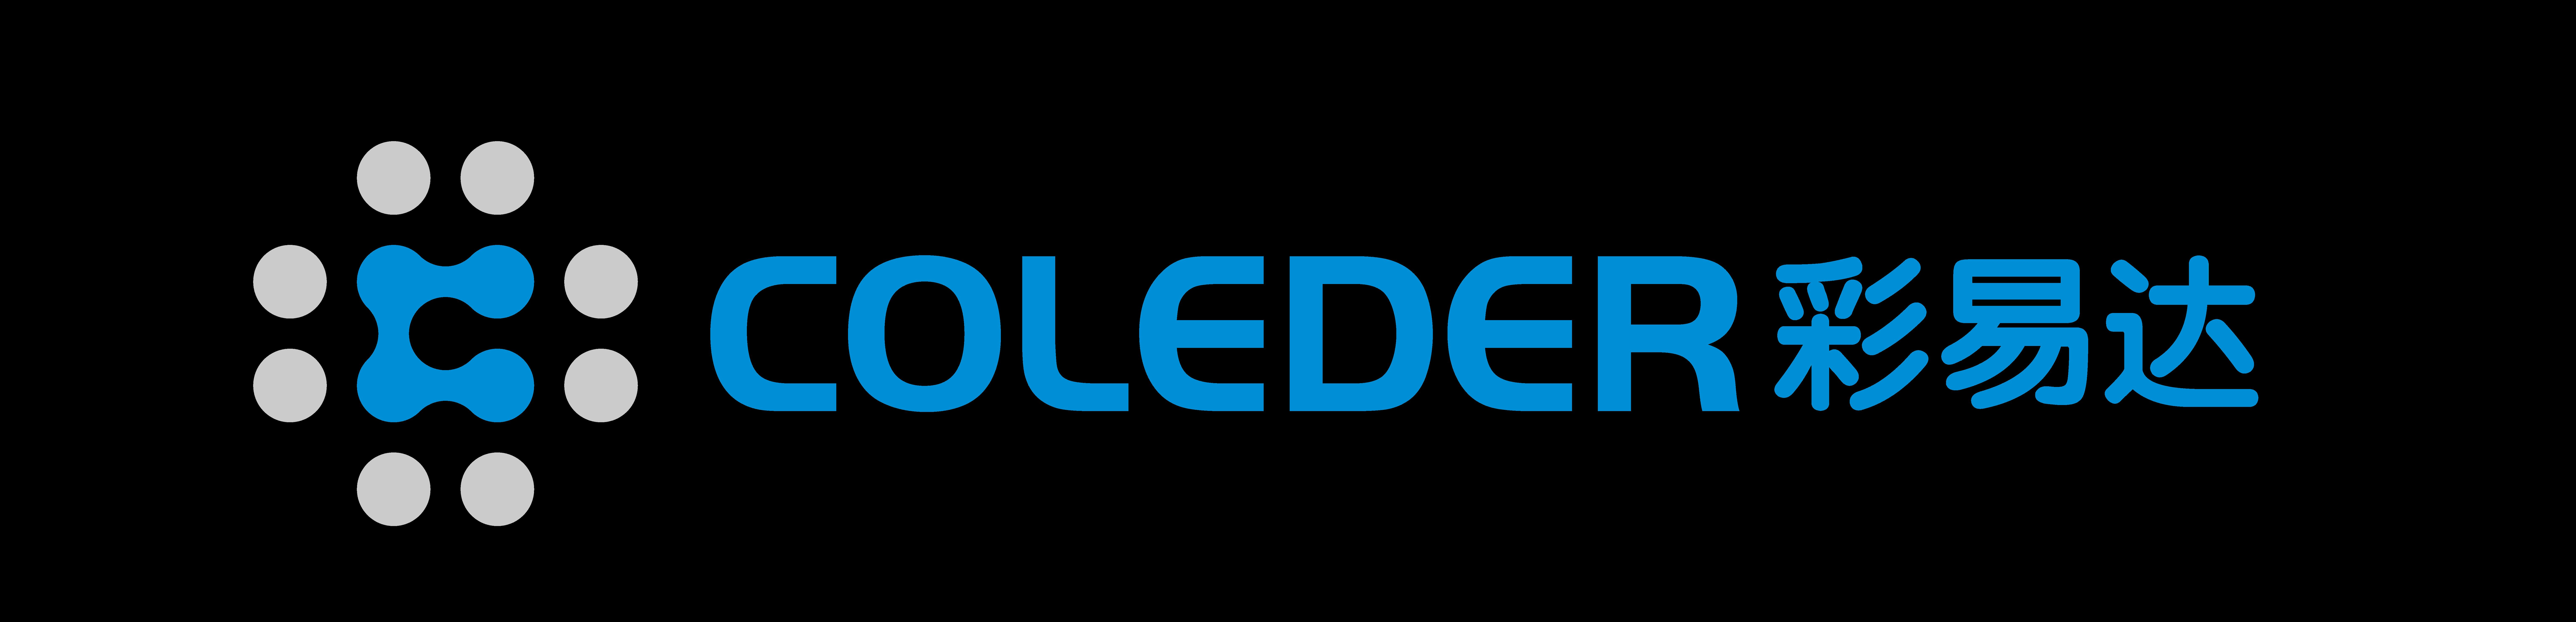 C OLEDER BBIN备用网址-白菜项目